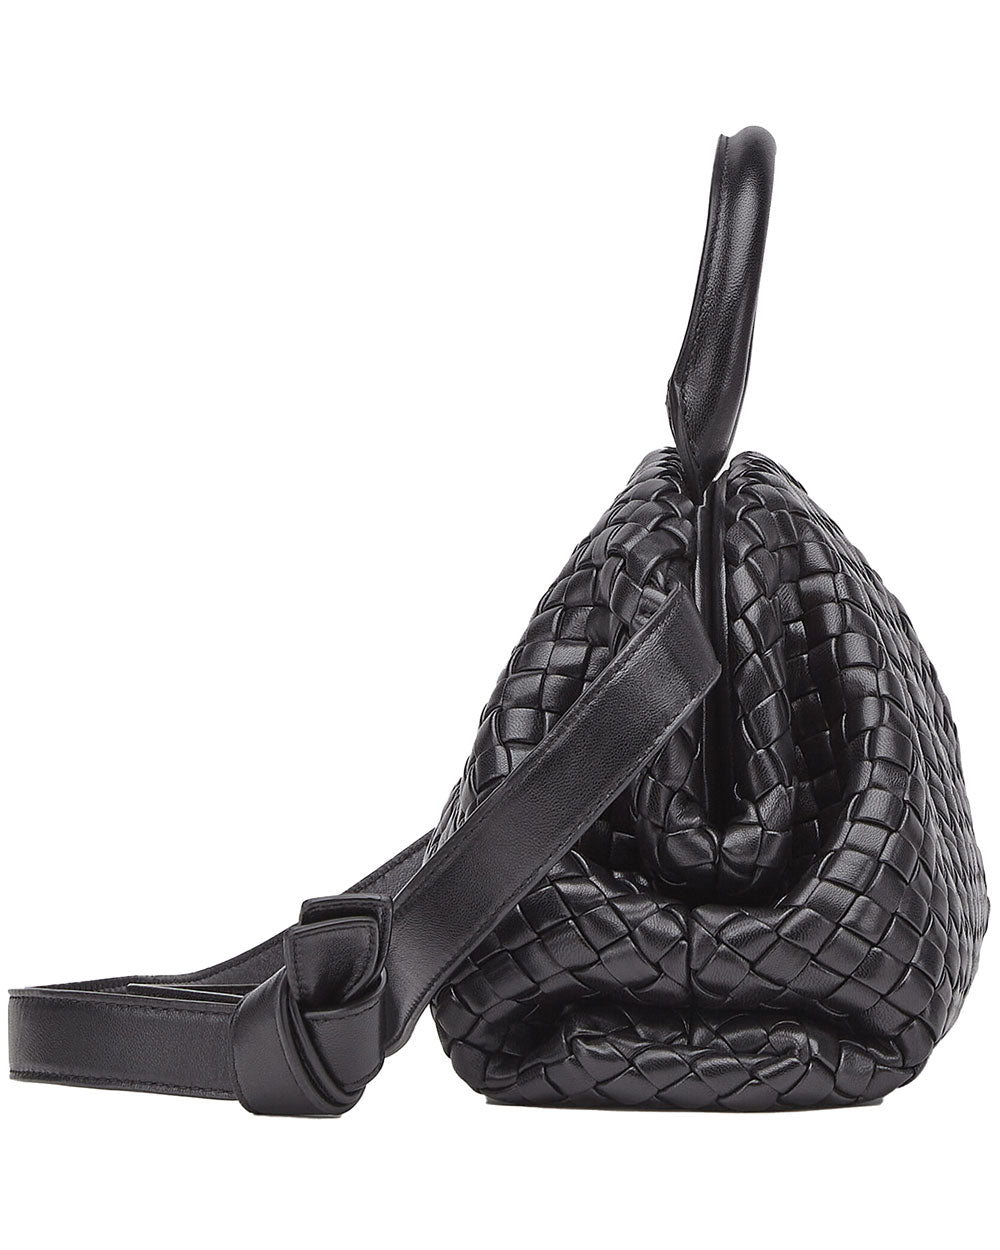 Small Intrecciato Top Handle Bag in Black